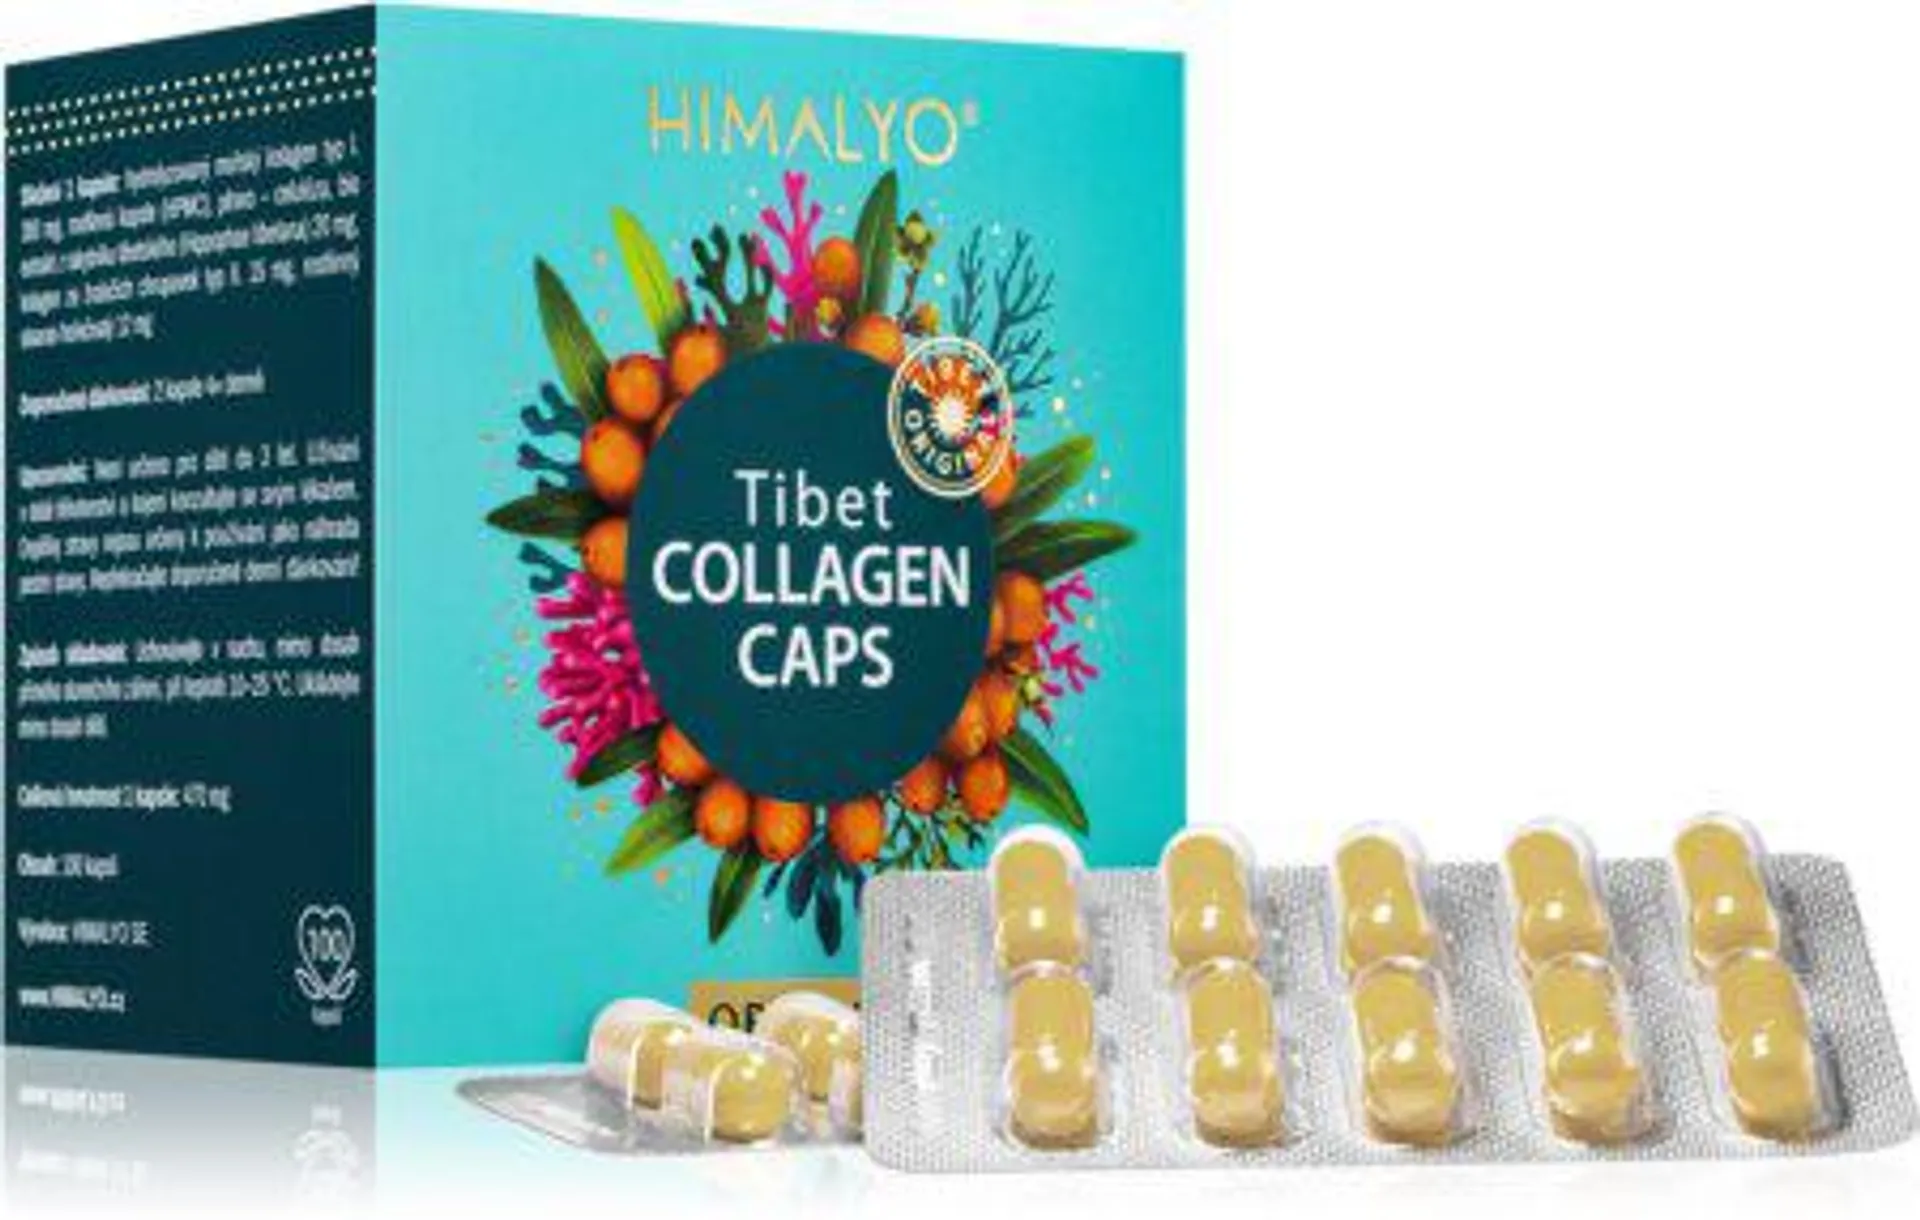 Tibet Collagen Caps